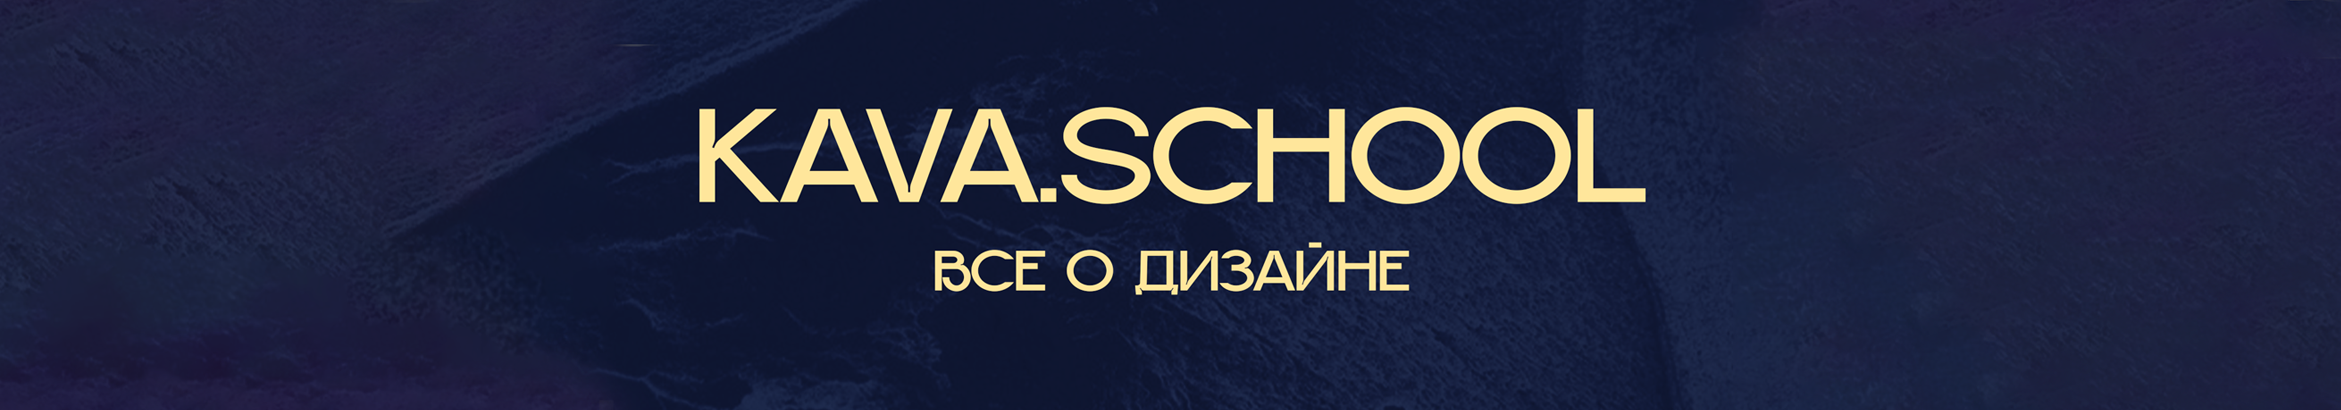 Bannière de profil de Kava School